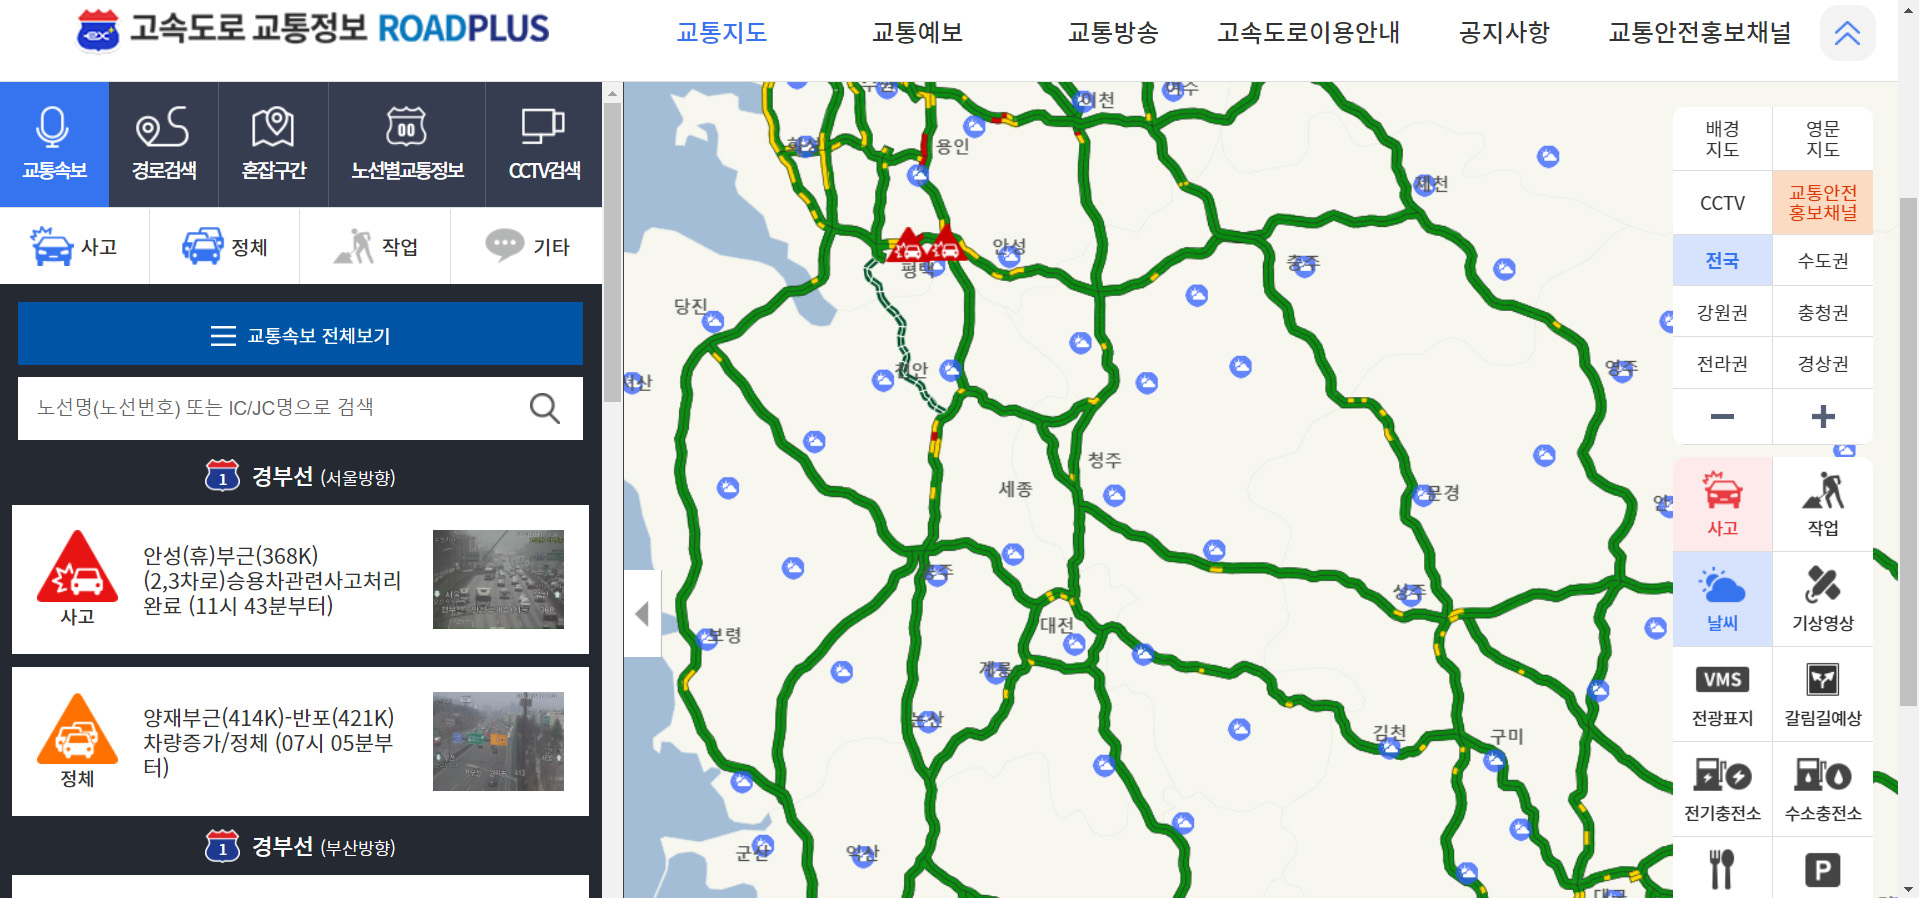 한국도로공사 고속도로 교통정보에서 기상정보 활용 출처: 한국도로공사 고속도로 교통정보(http://www.roadplus.co.kr/main/main.do)